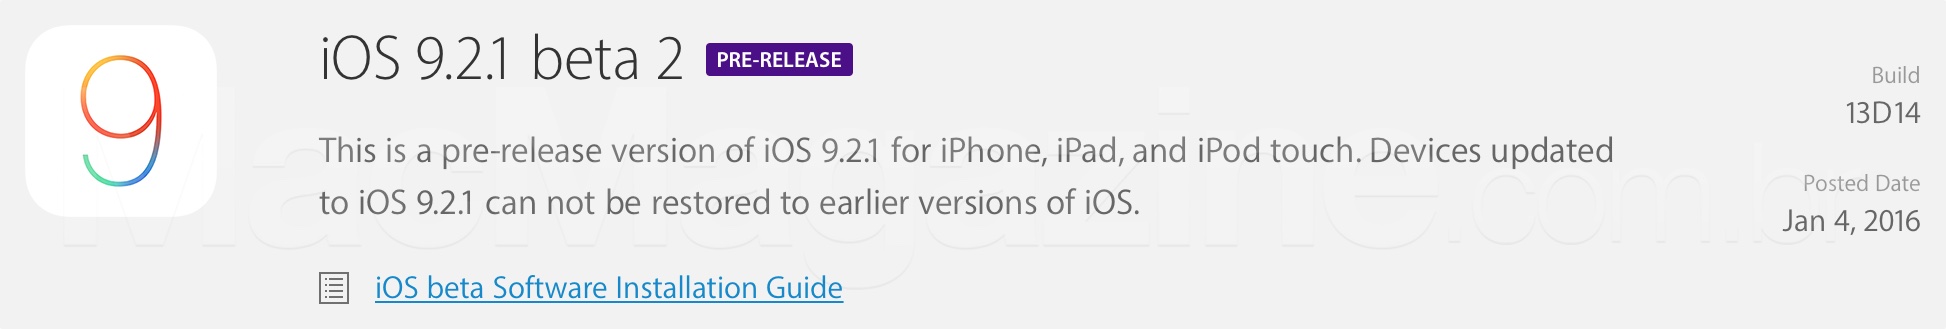 iOS 9.2.1 بيتا 2